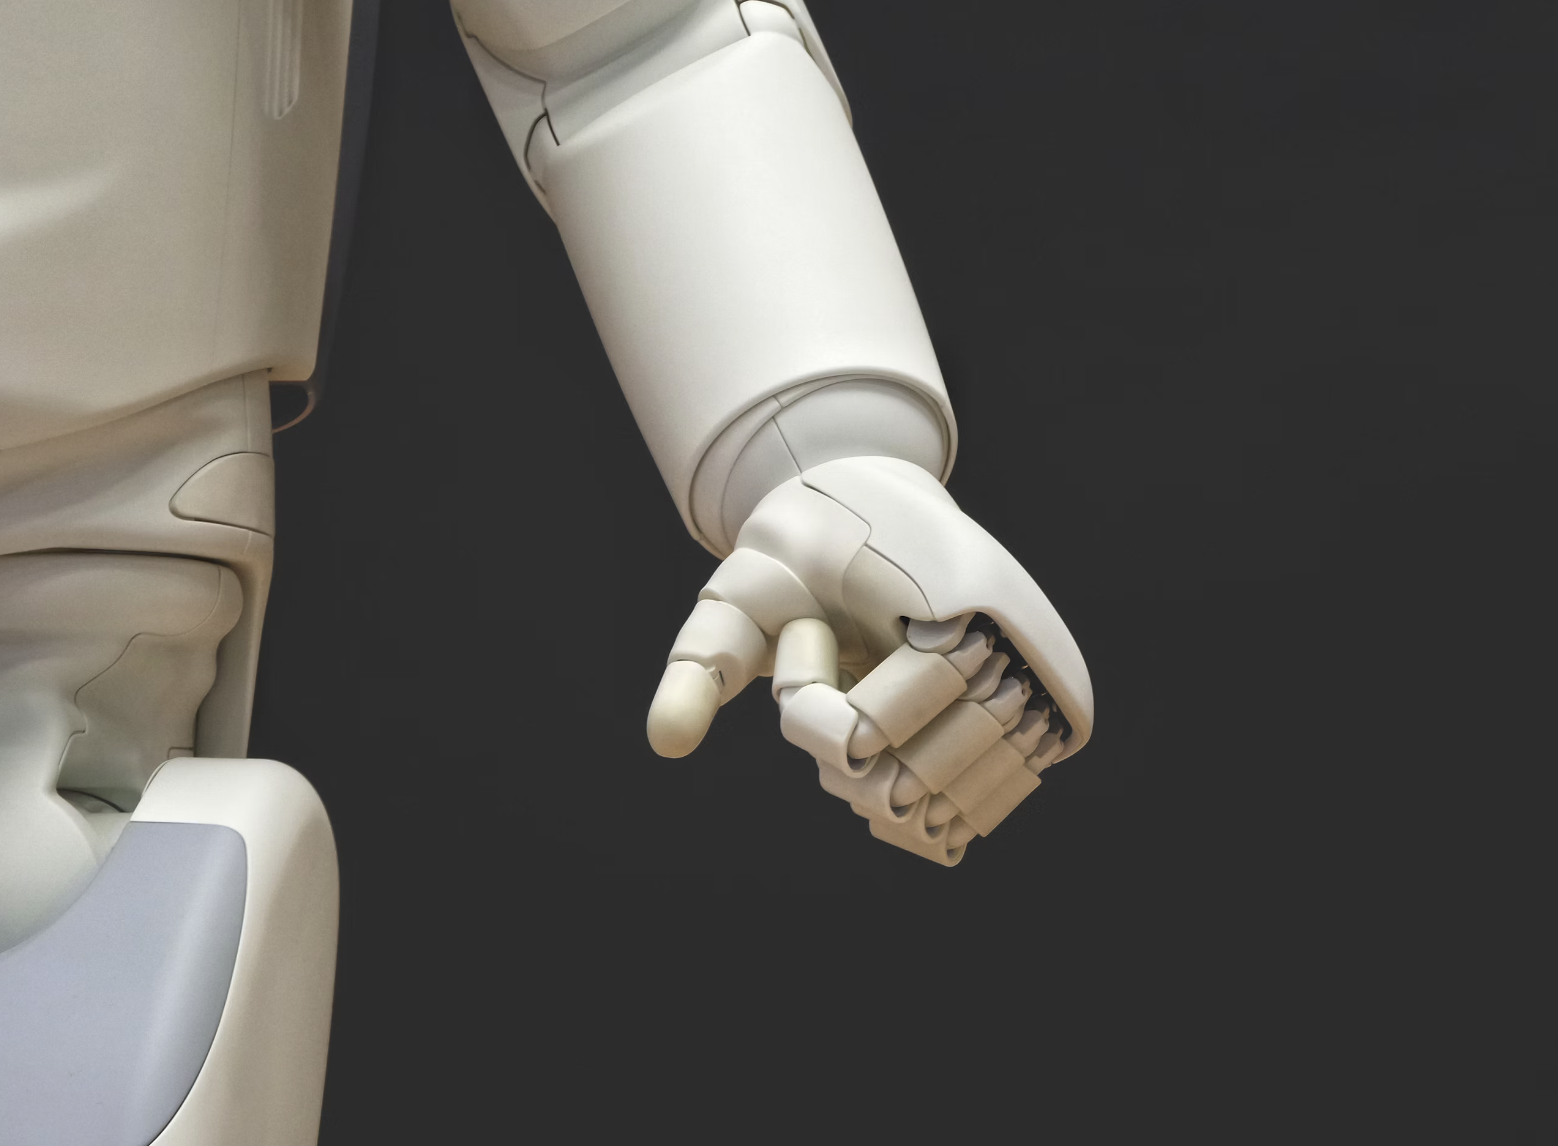 Chirurgia przy współudziale robotów jest już refundowana przez NFZ